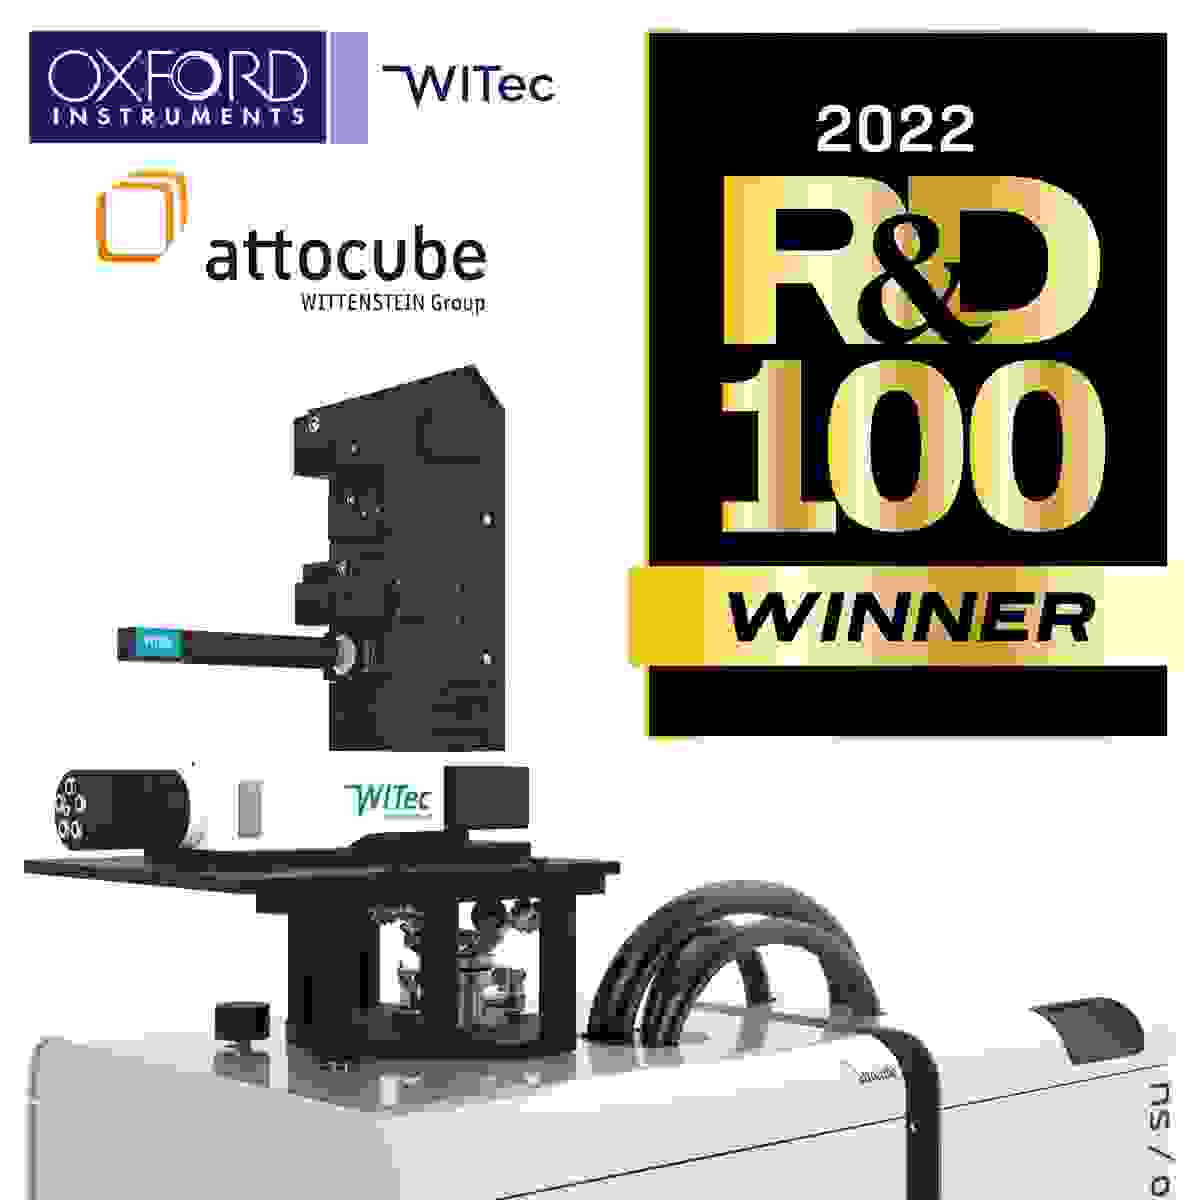 cryoRaman: R&D 100 Award Gewinner